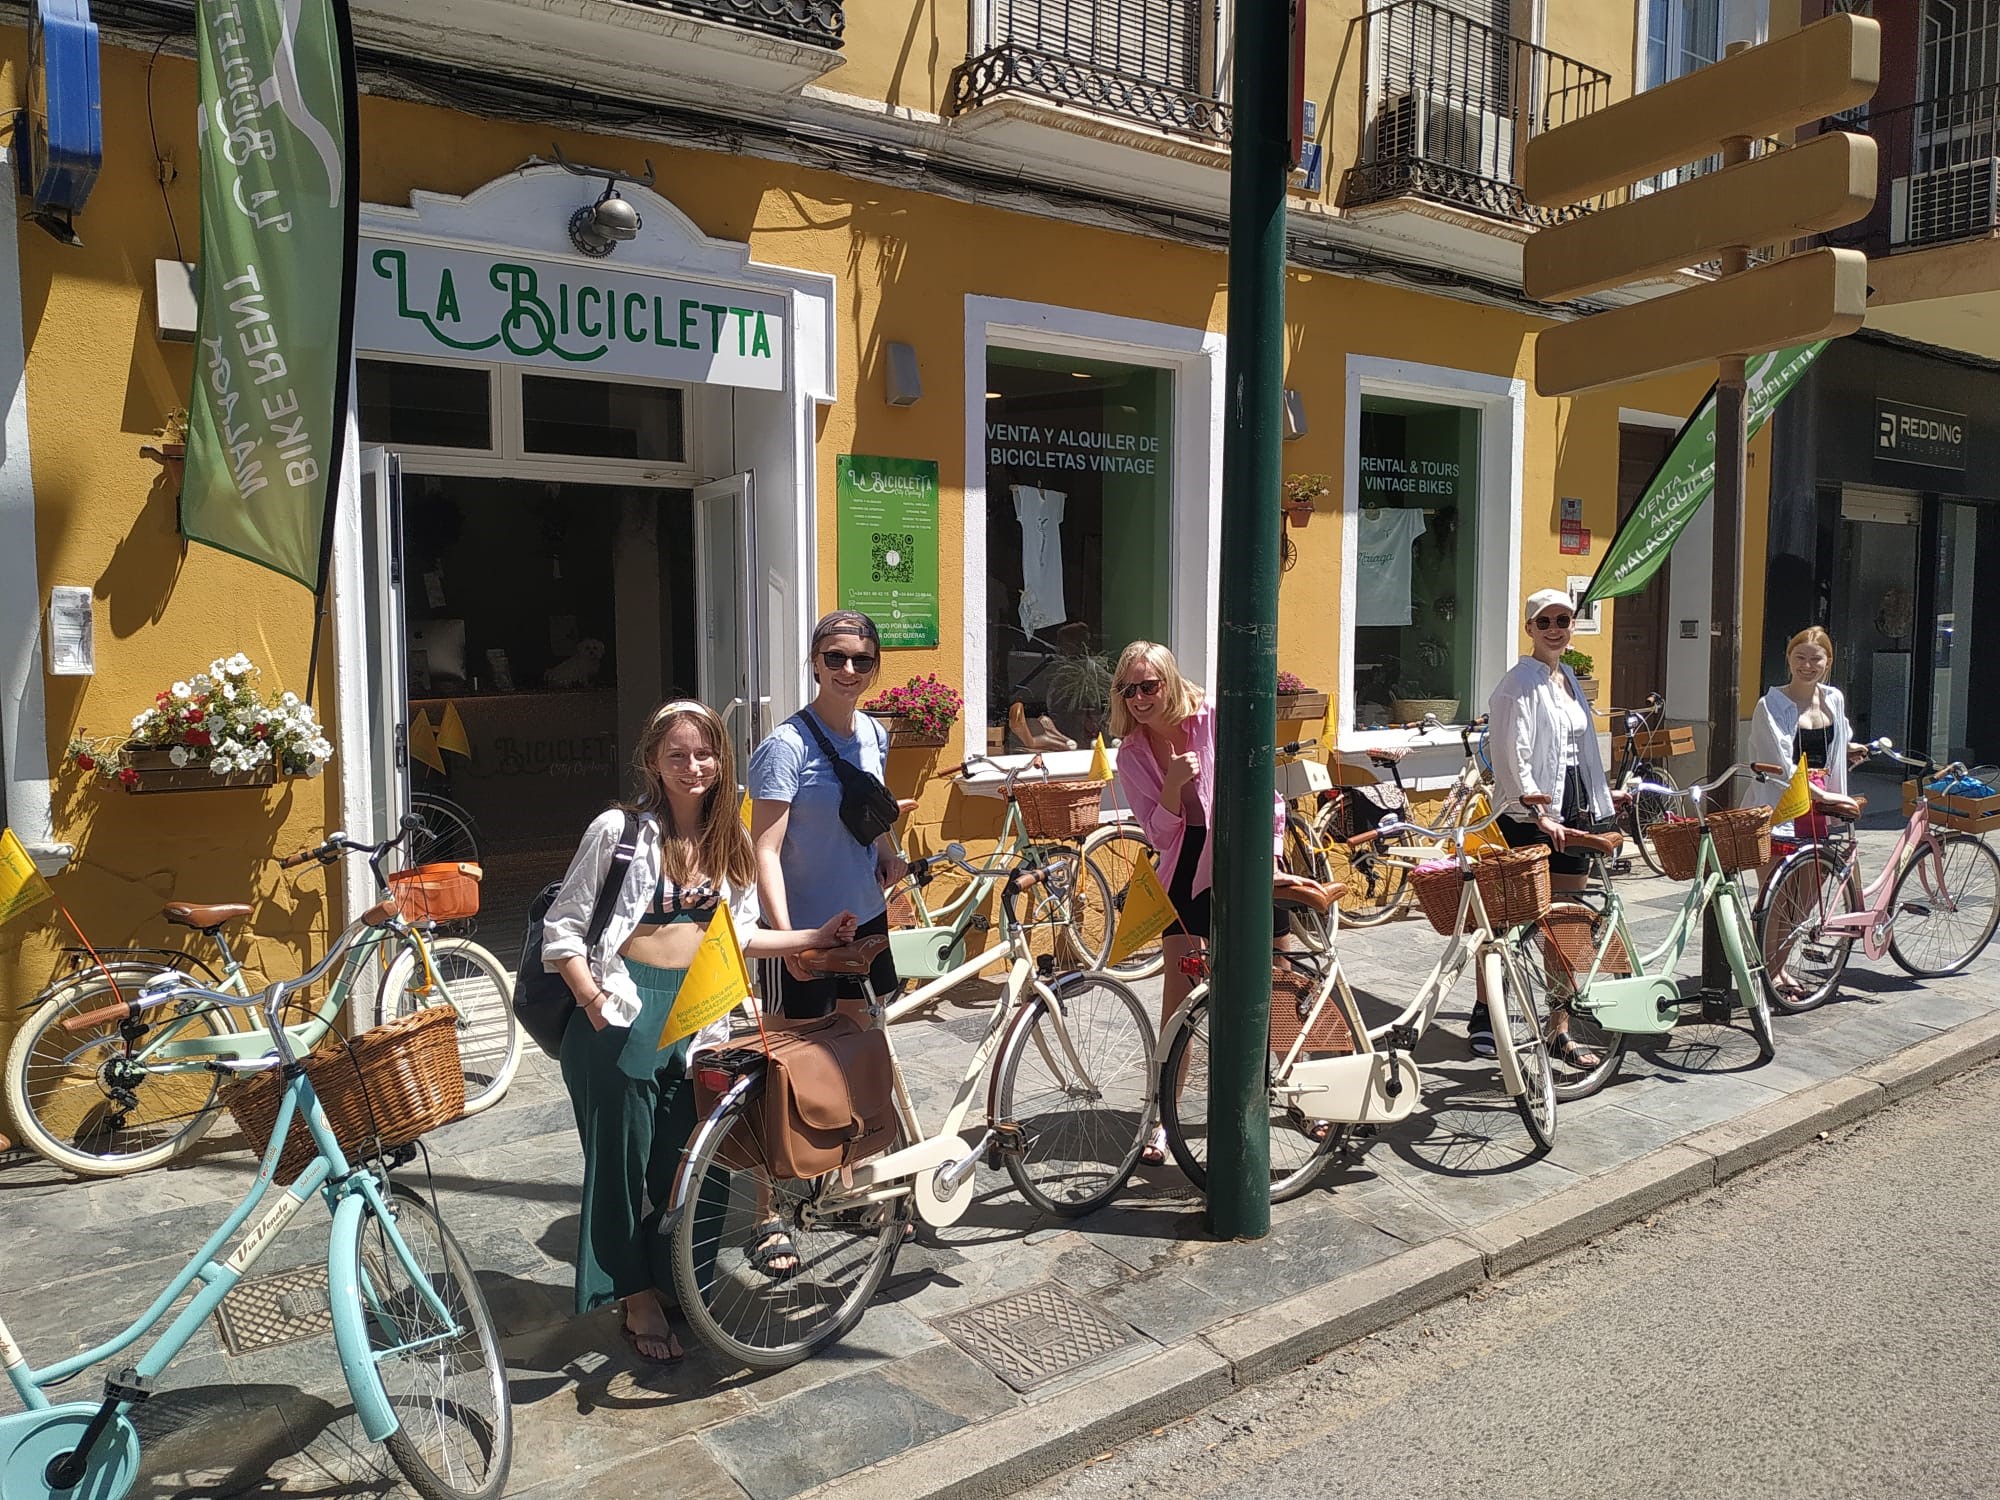 La Bicicletta - Málaga Location de vélo